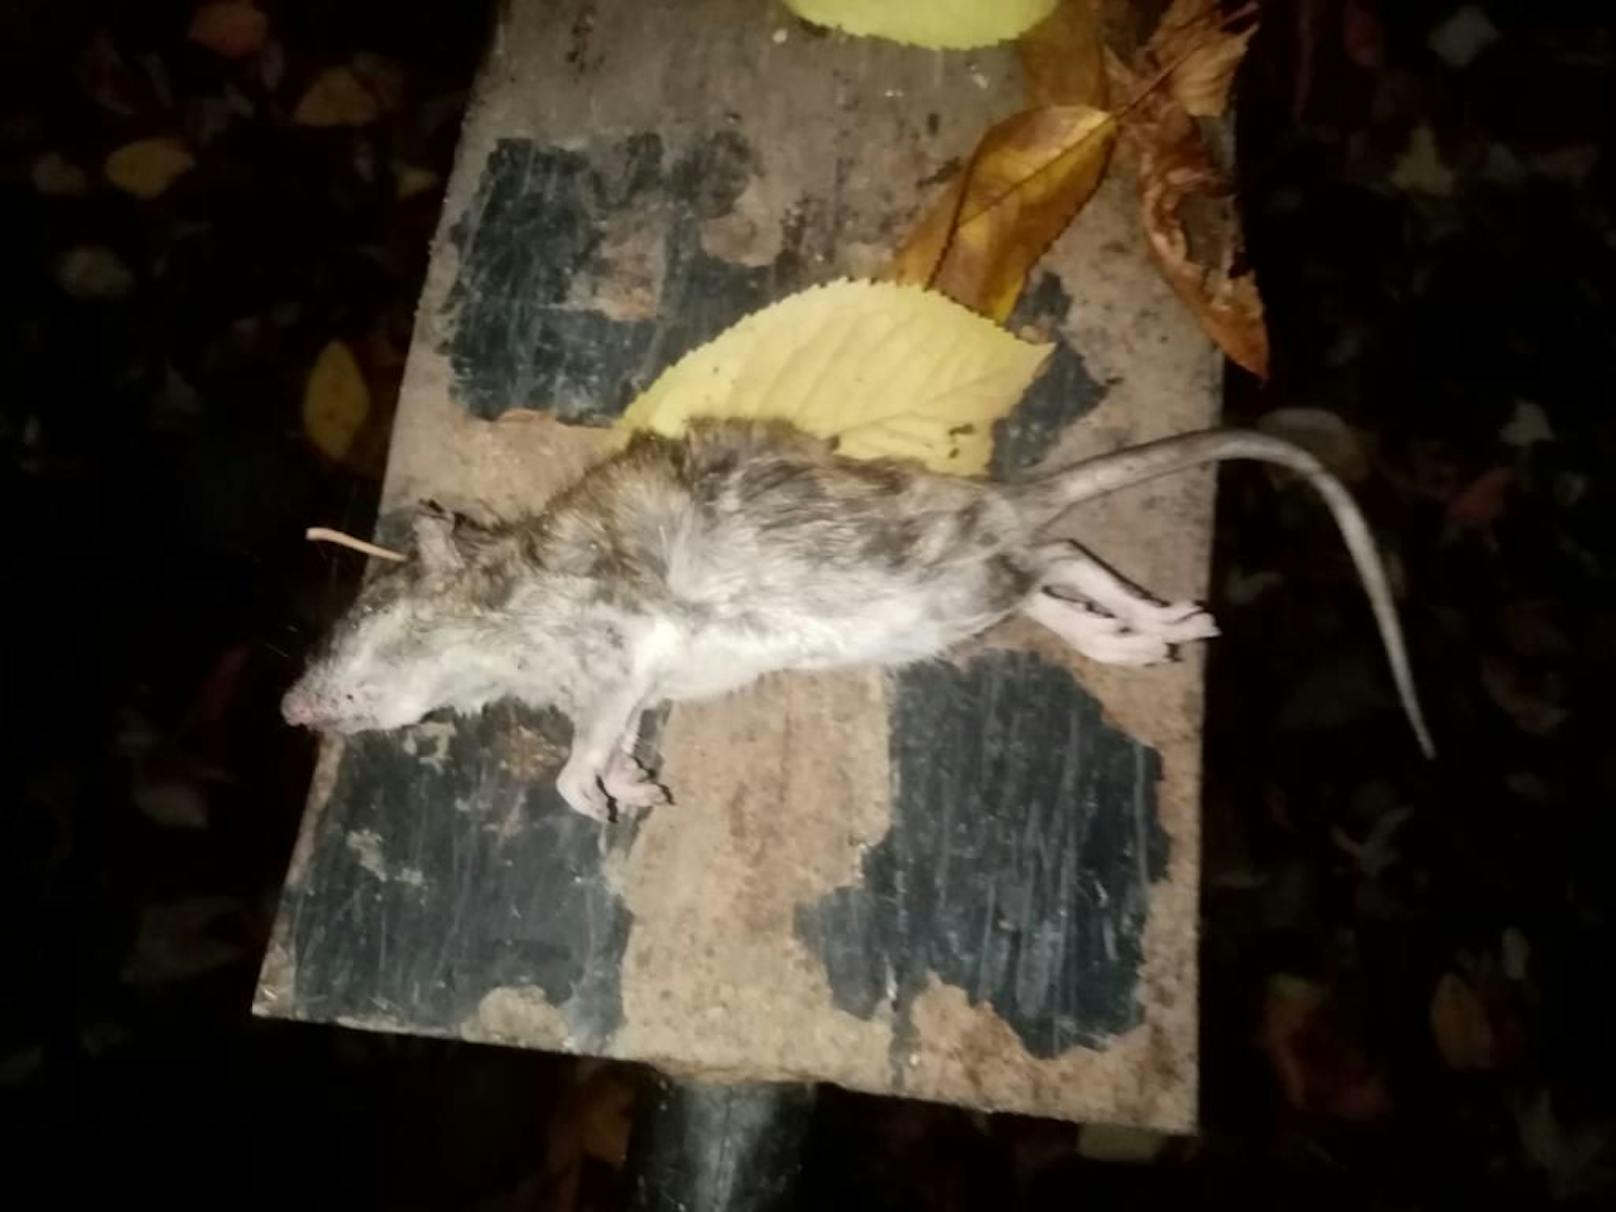 Die Ratte sieht noch schlimmer aus, ist tot.